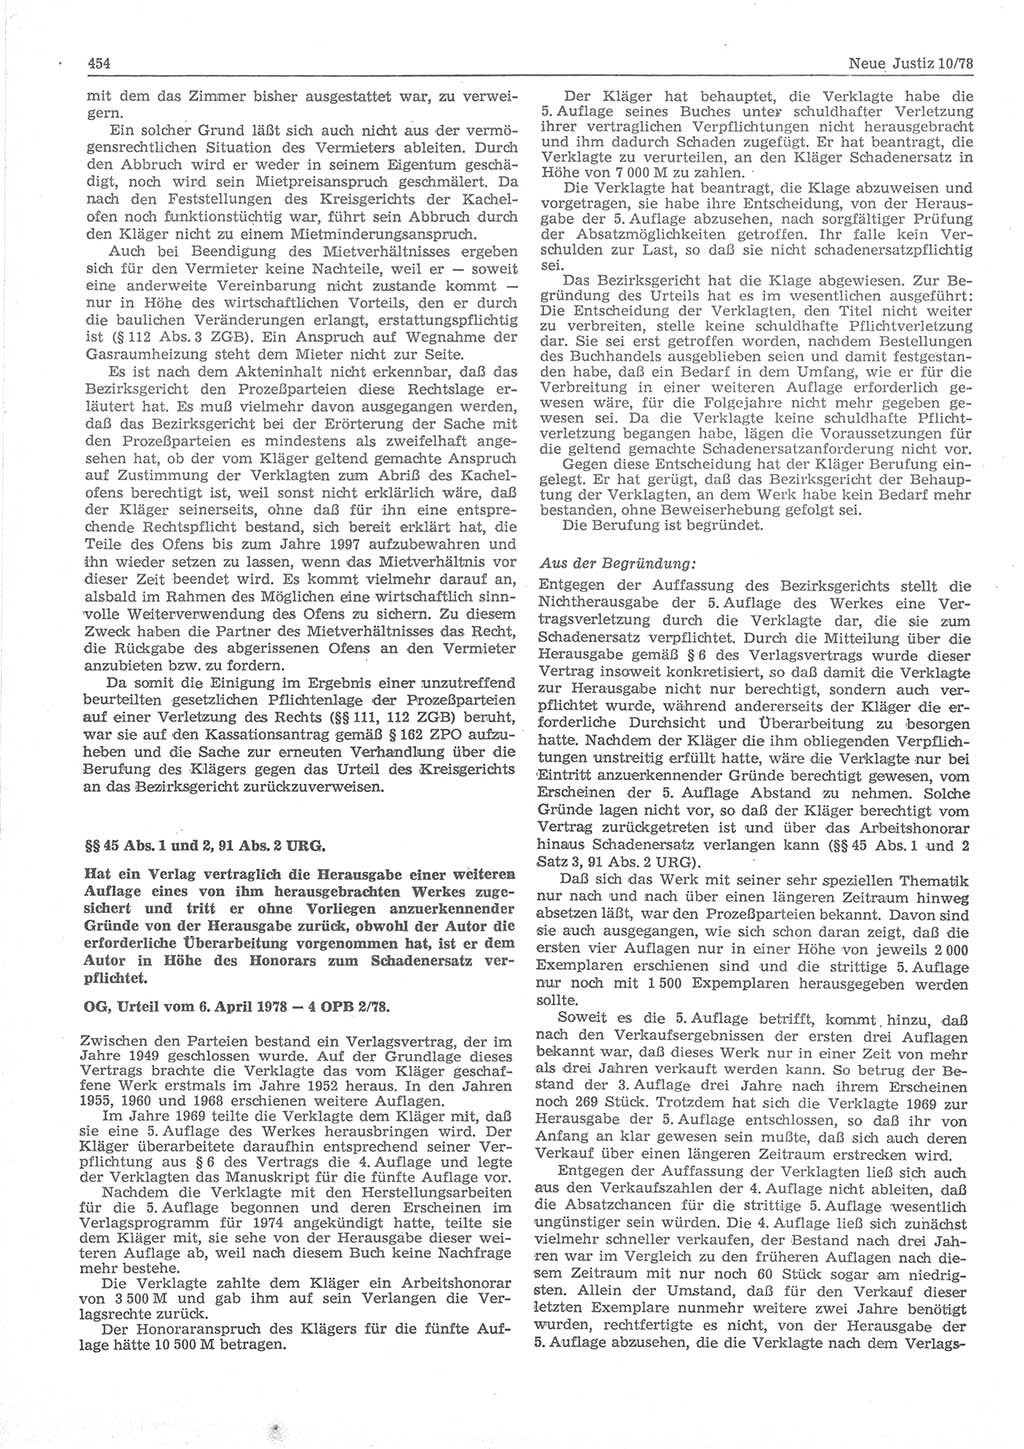 Neue Justiz (NJ), Zeitschrift für sozialistisches Recht und Gesetzlichkeit [Deutsche Demokratische Republik (DDR)], 32. Jahrgang 1978, Seite 454 (NJ DDR 1978, S. 454)